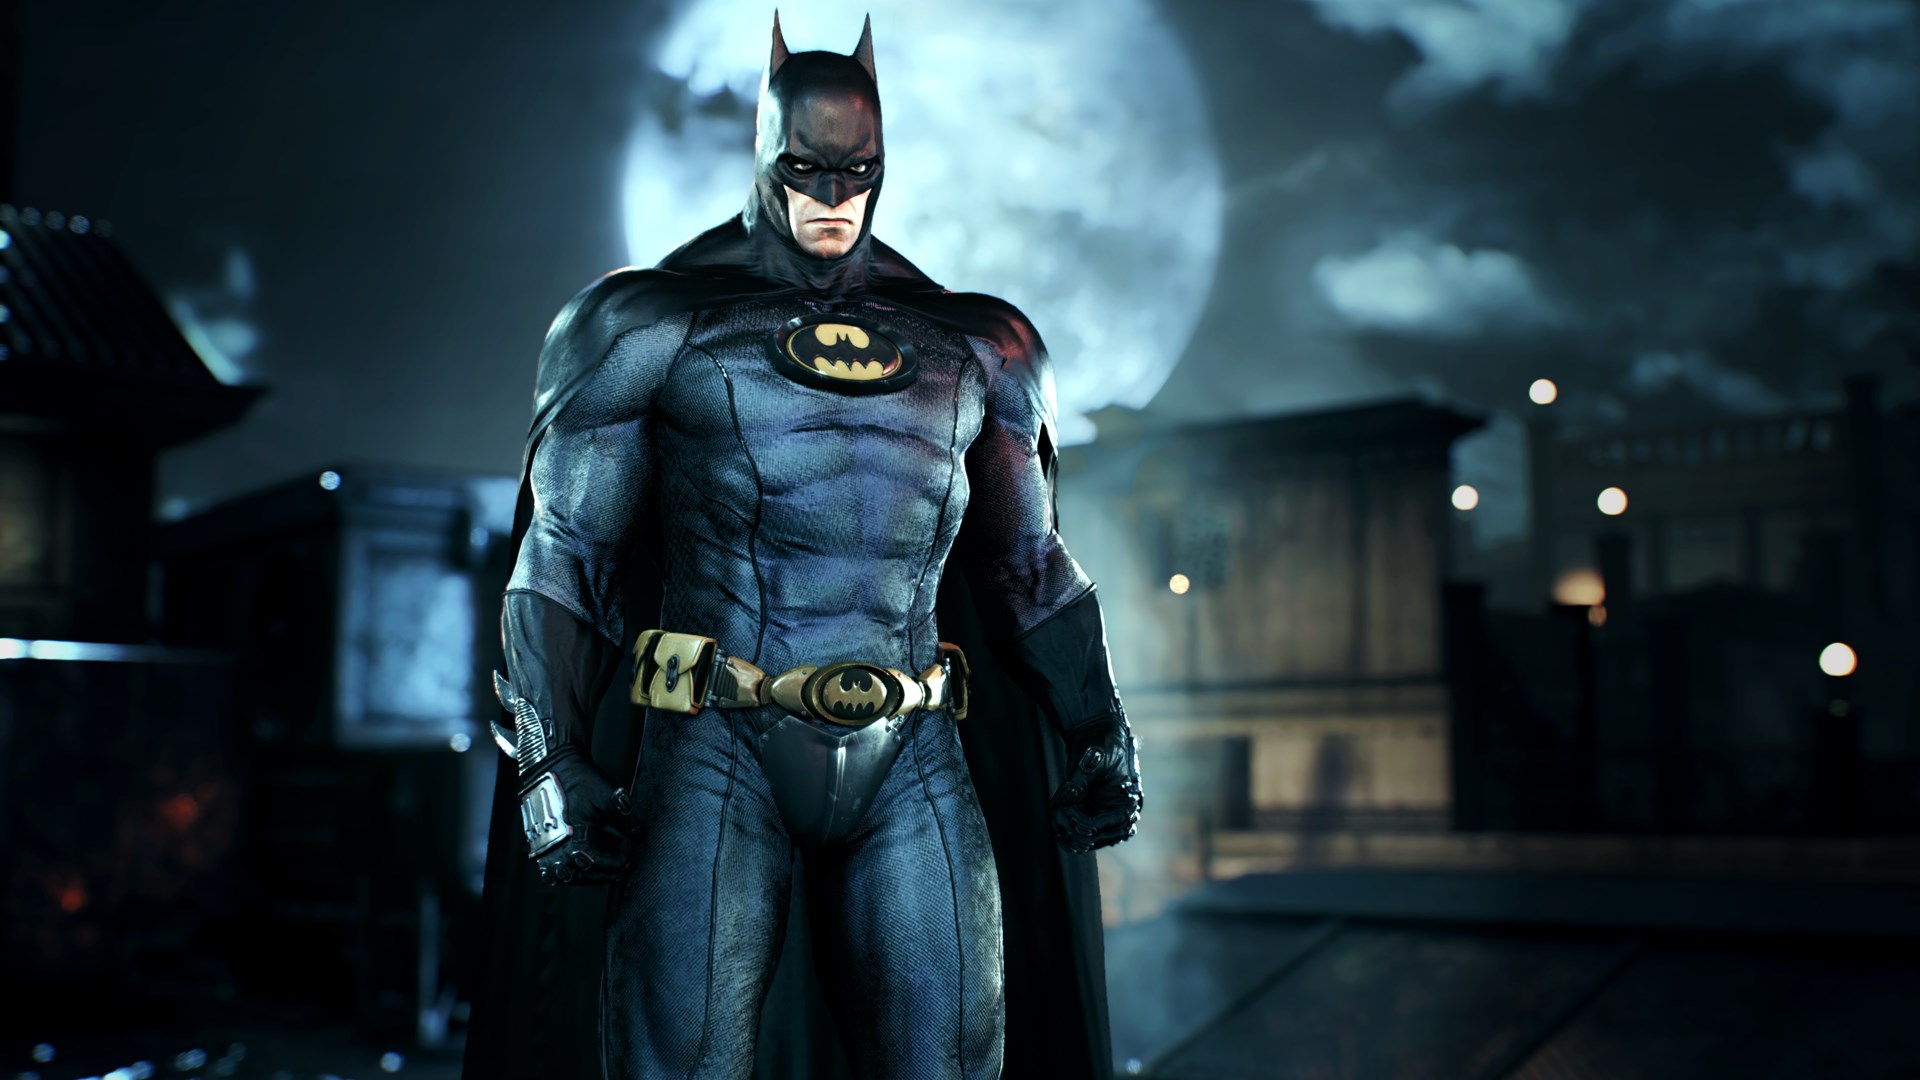 Amazon.com: DC Collectibles Batman Arkham Knight: Commissioner Gordon  Action Figure : Toys & Games